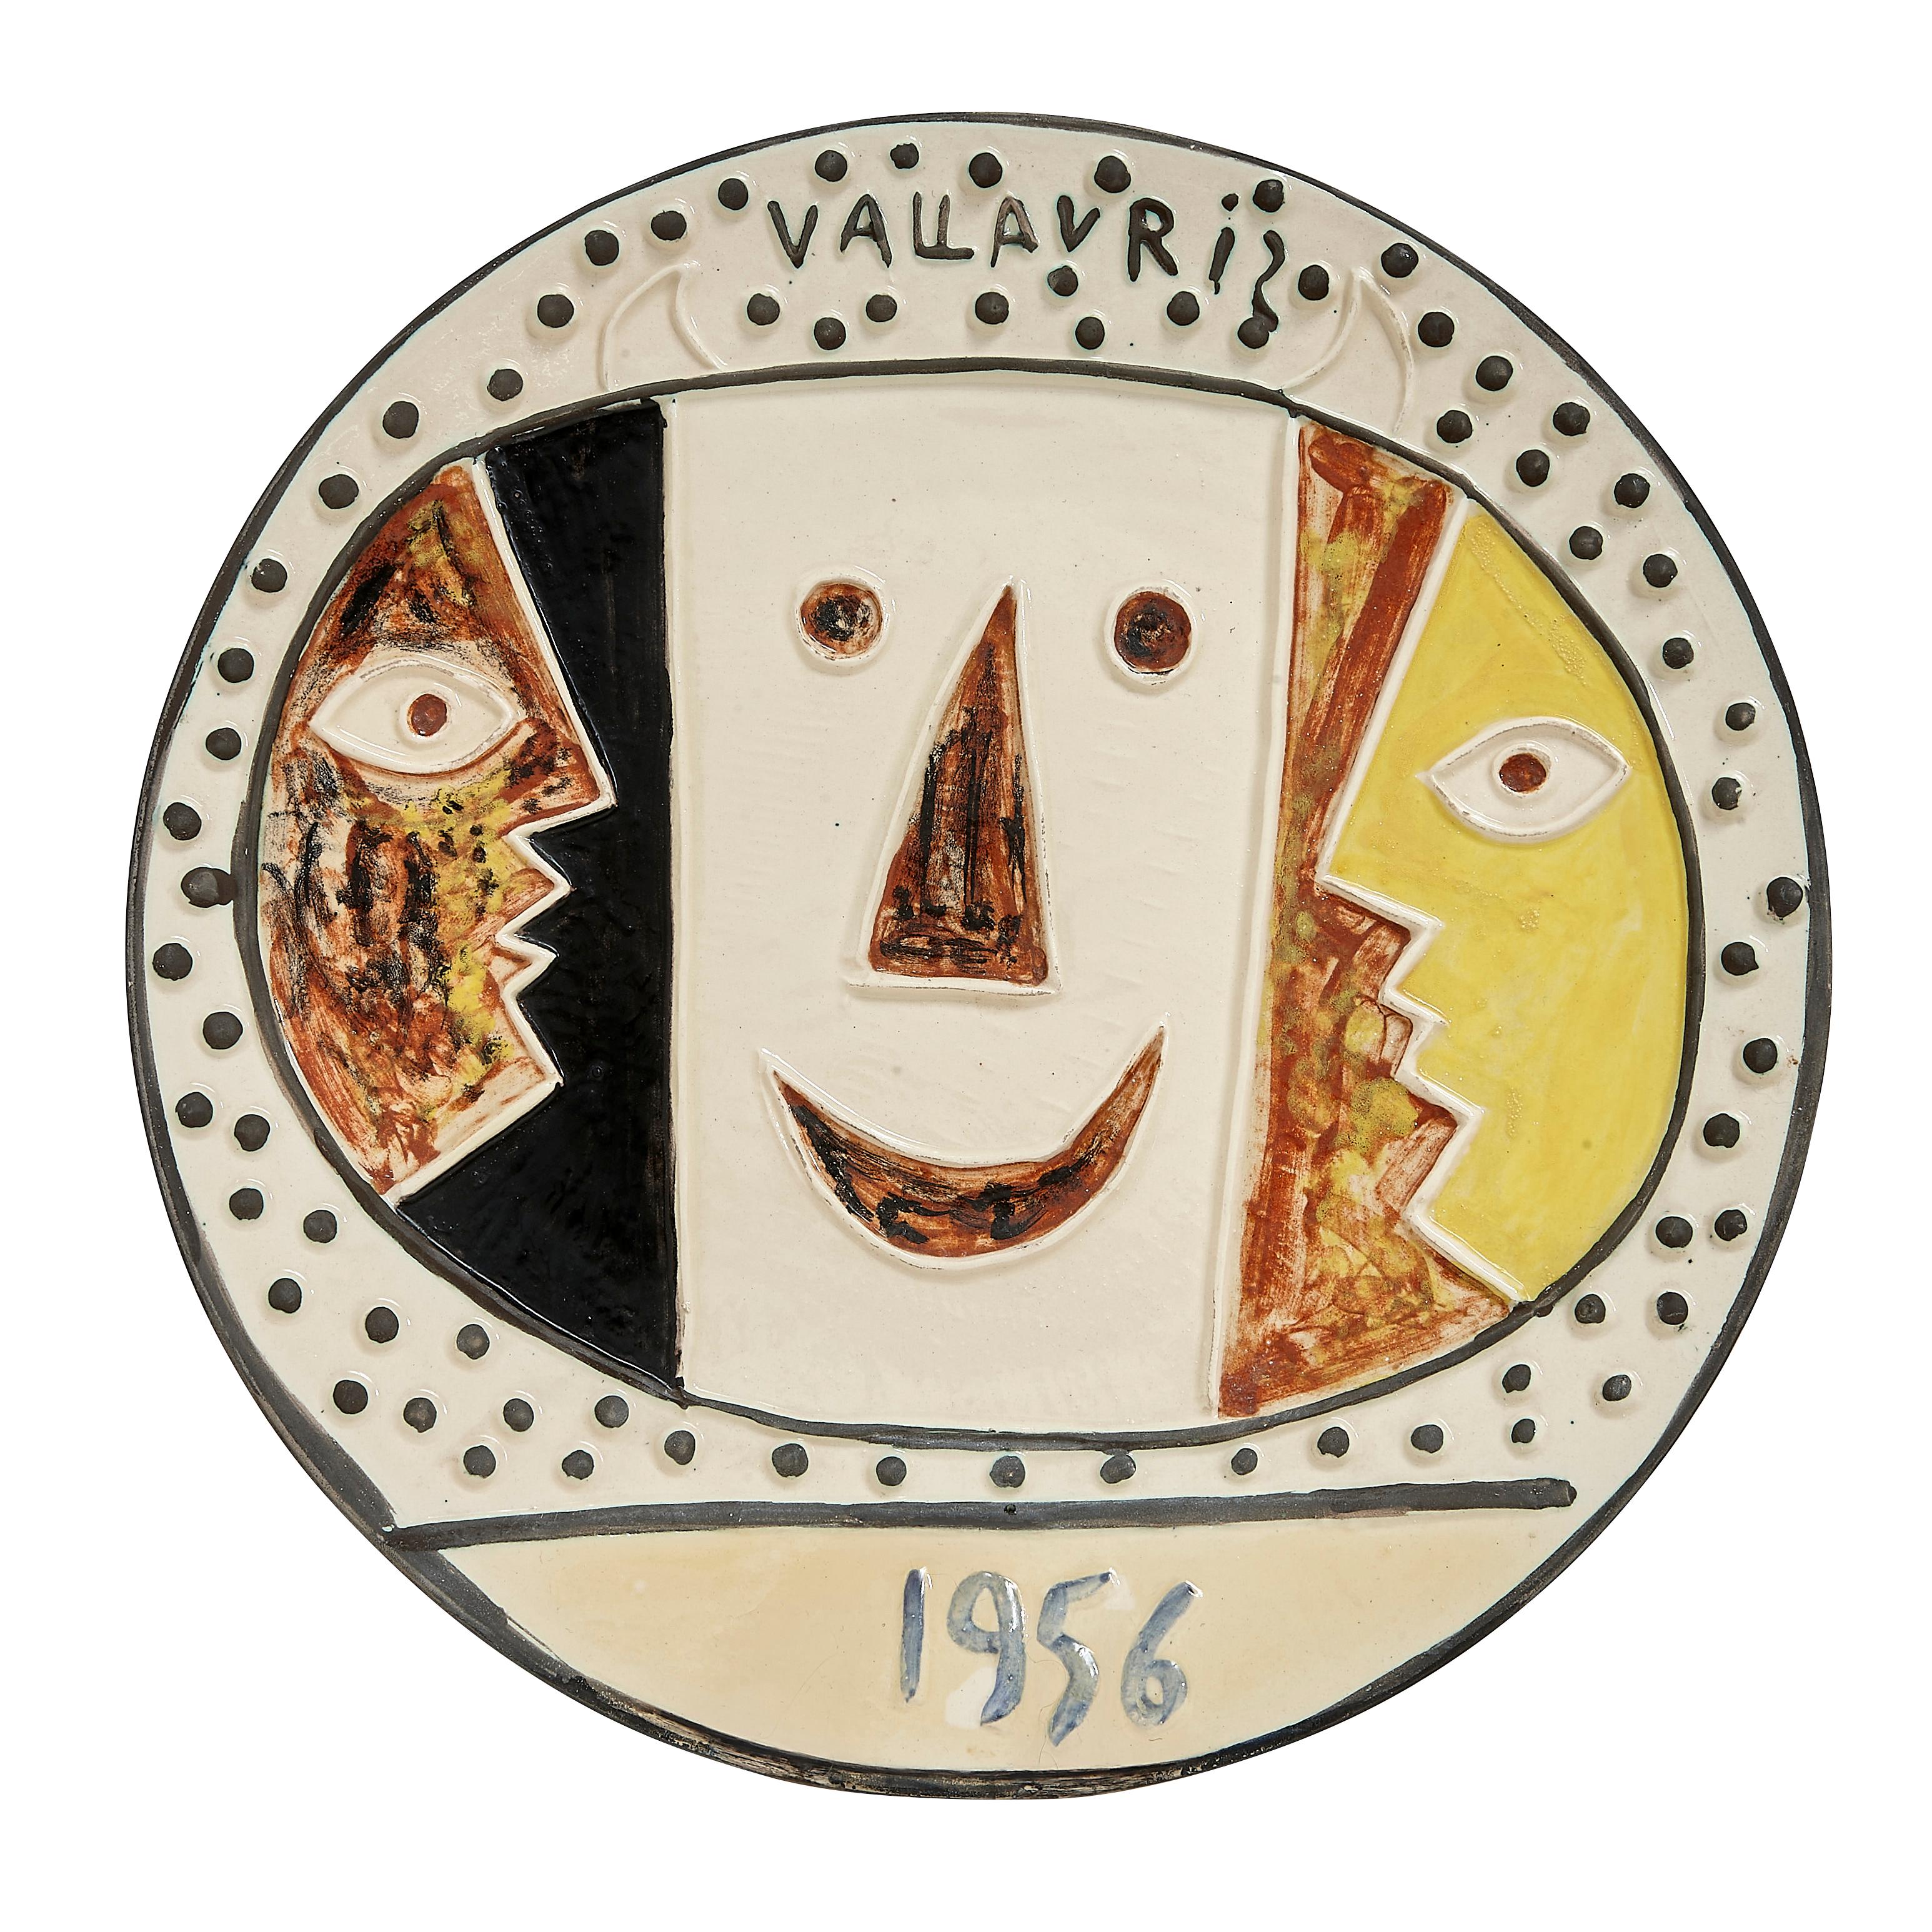 PABLO PICASSO (1881-1973) 
Vallauris (A. R. 331)

Teller "Terre de faïence", farbig bemalt und glasiert, 1956, aus einer Auflage von 100 Stück. Nummeriert 50/100 und eingeschnitten C 103, mit den Stempeln Empreinte Originale de Picasso und Madoura